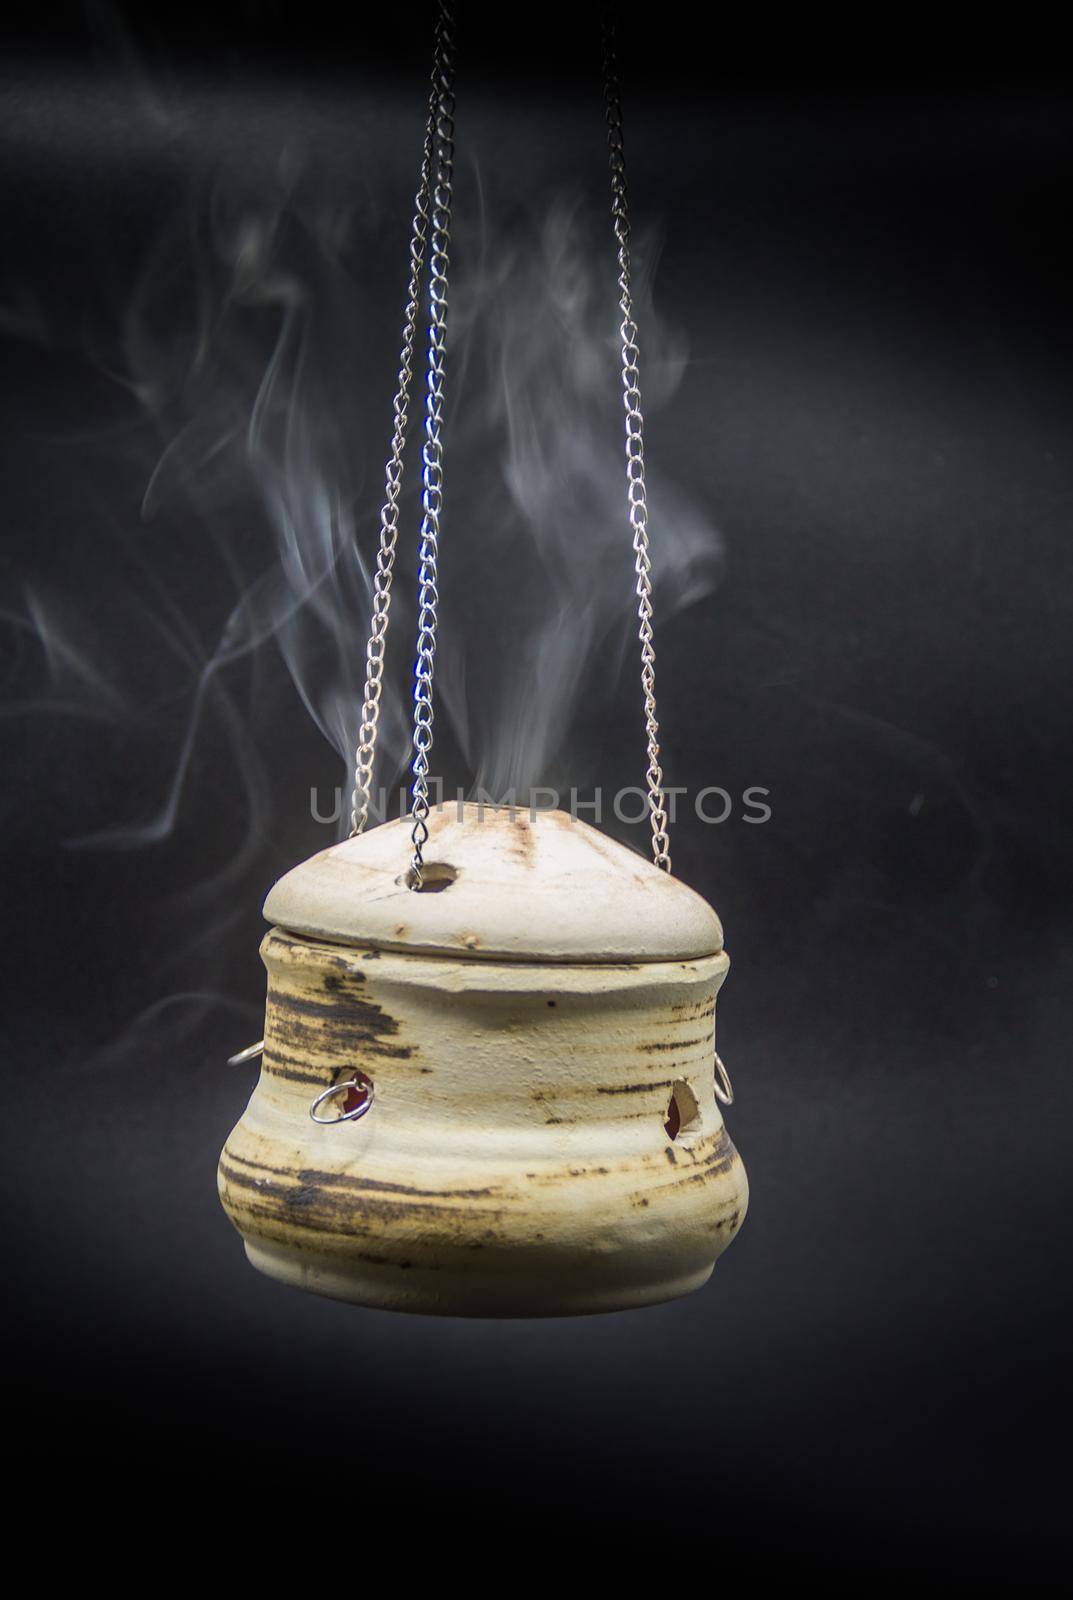 bowl of incense hanging smoke on black background